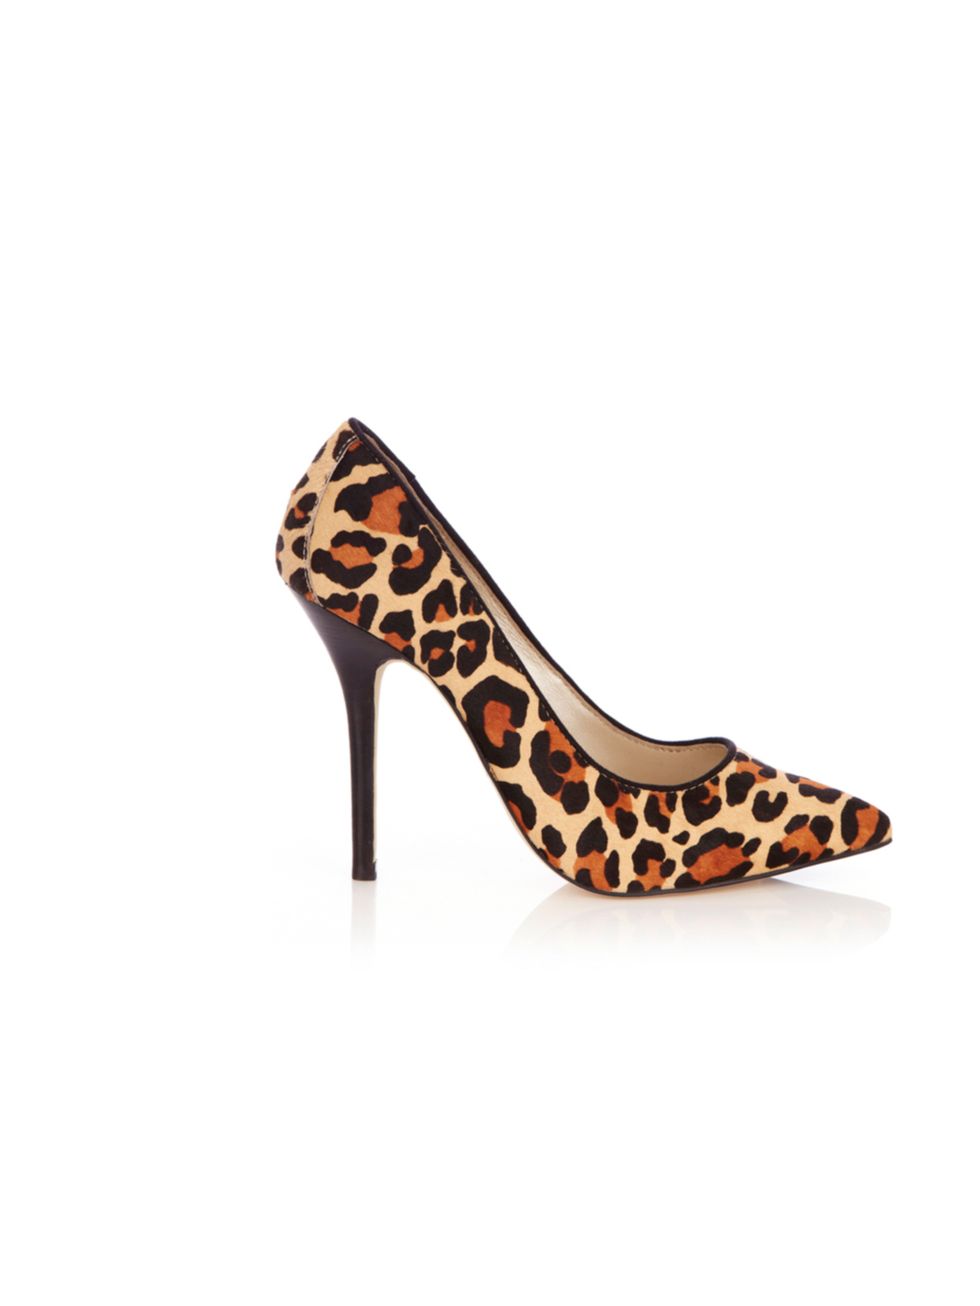 <p><a href="http://www.karenmillen.com/leopard-print-court/footwear/karenmillen/fcp-product/211FP02742">Karen Millen</a> leopard court, £140</p>